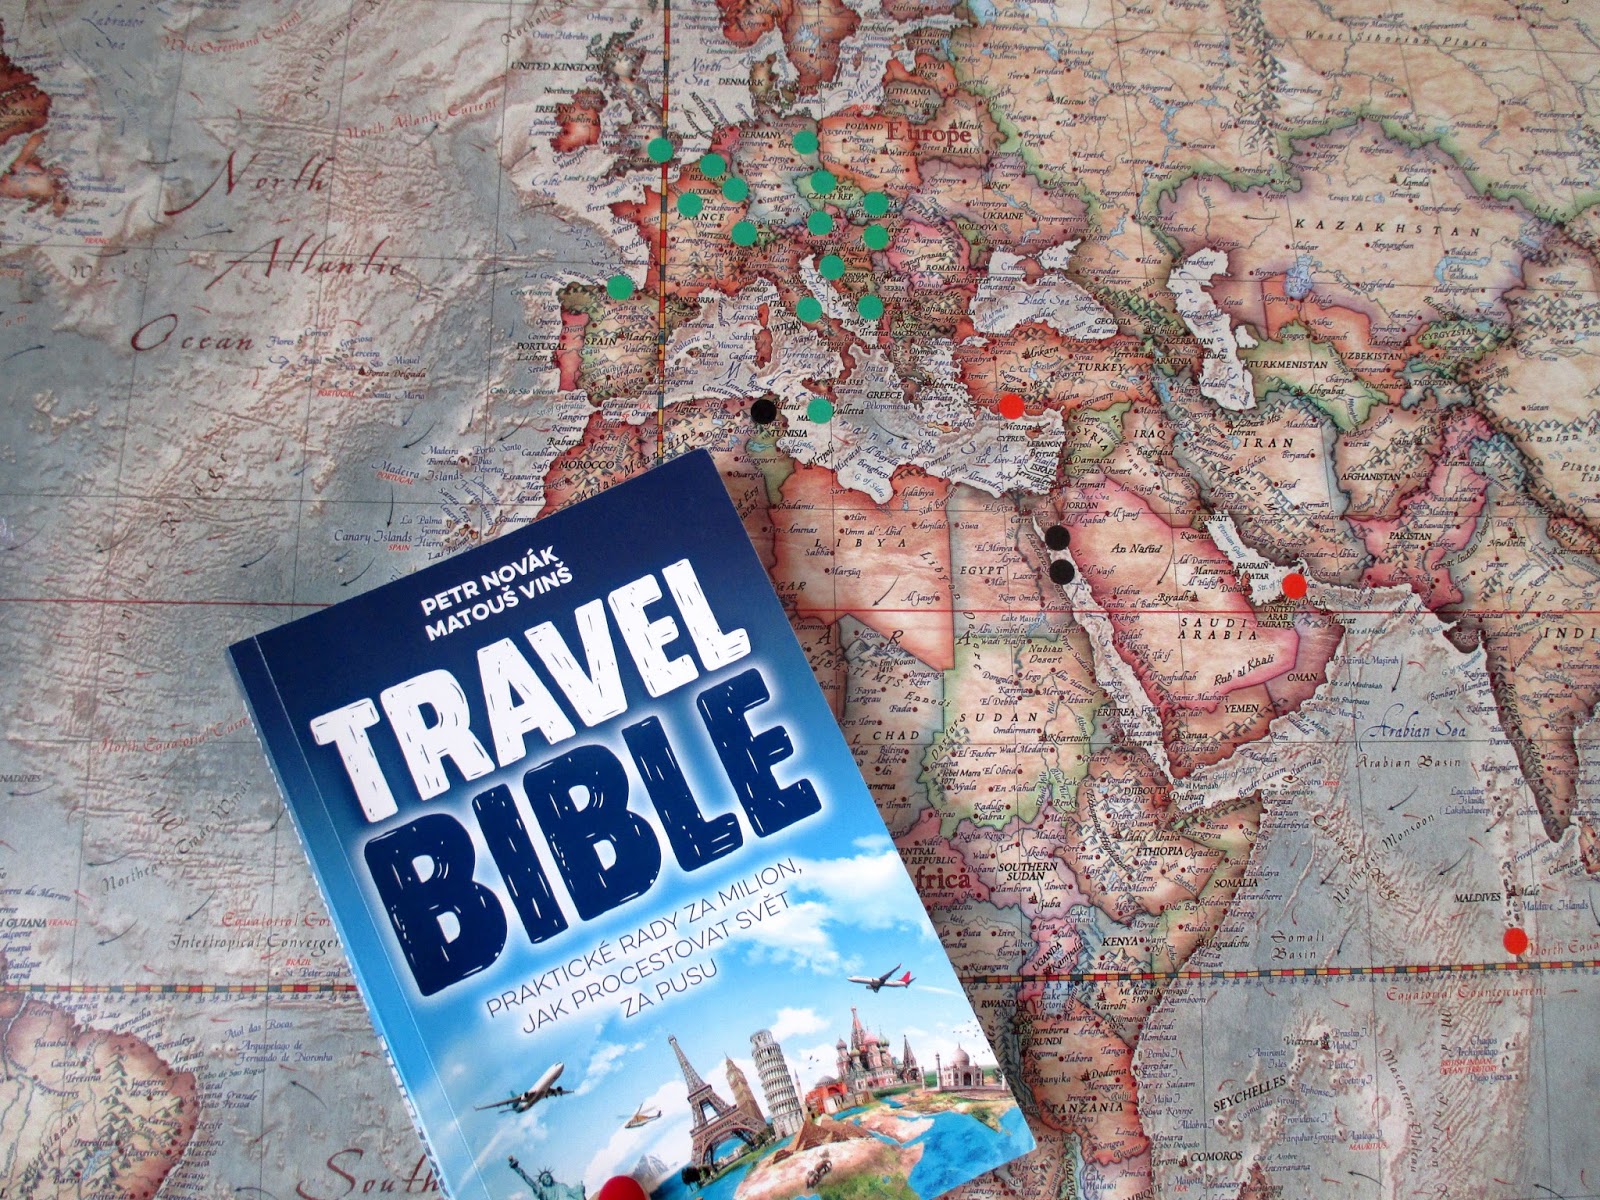 christian travel books